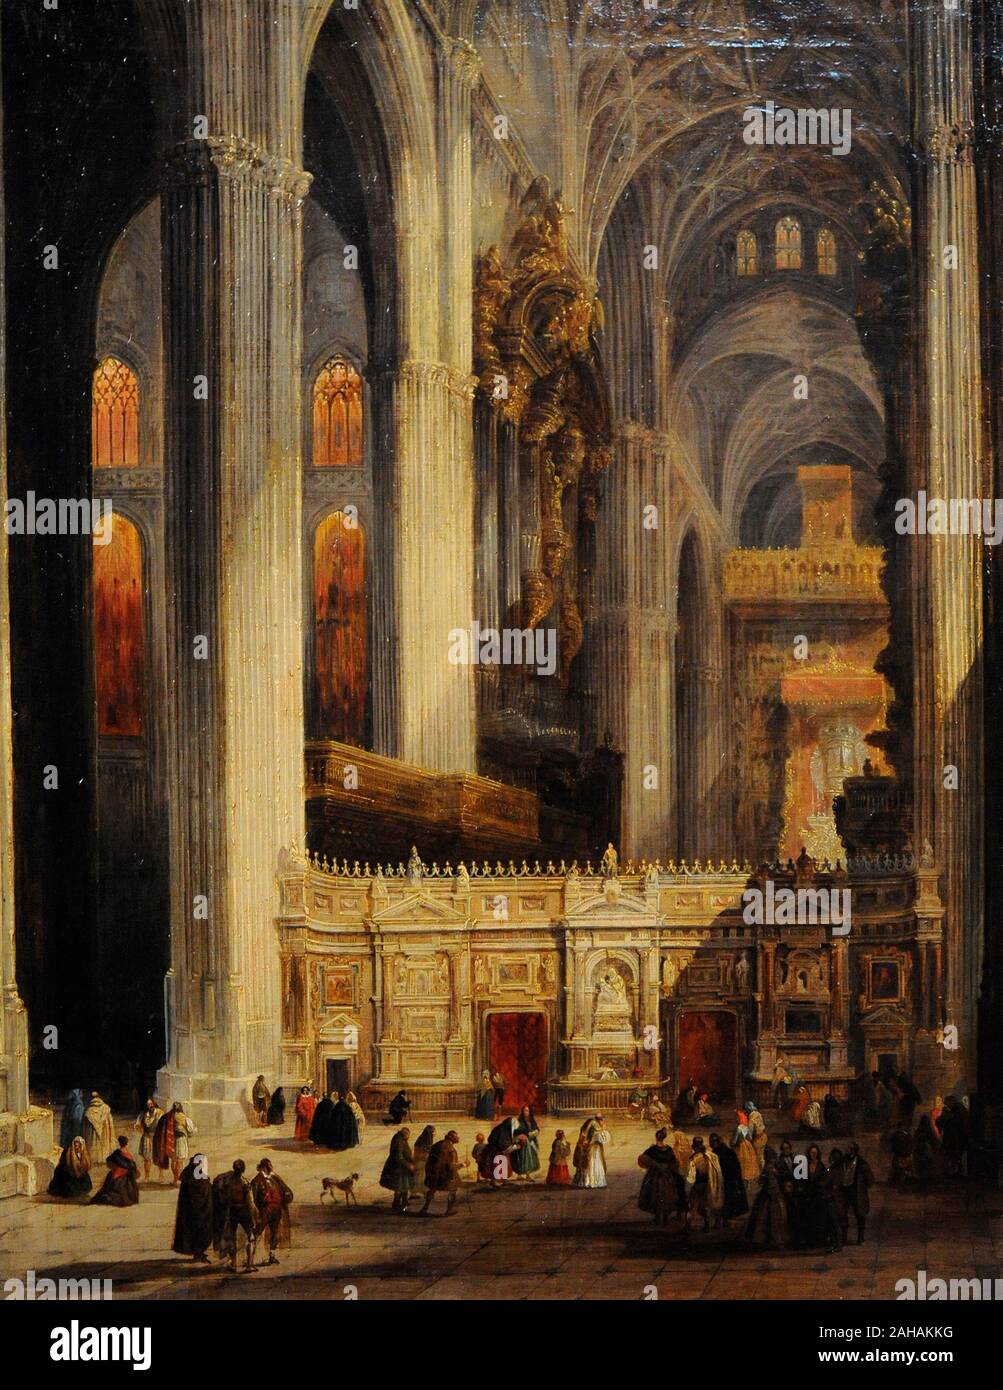 Jenaro Perez Villaamil (1807-1854). Peintre espagnol. Intérieur de la Cathédrale de Séville, 1838. Musée du Romantisme. Madrid. L'Espagne. Banque D'Images